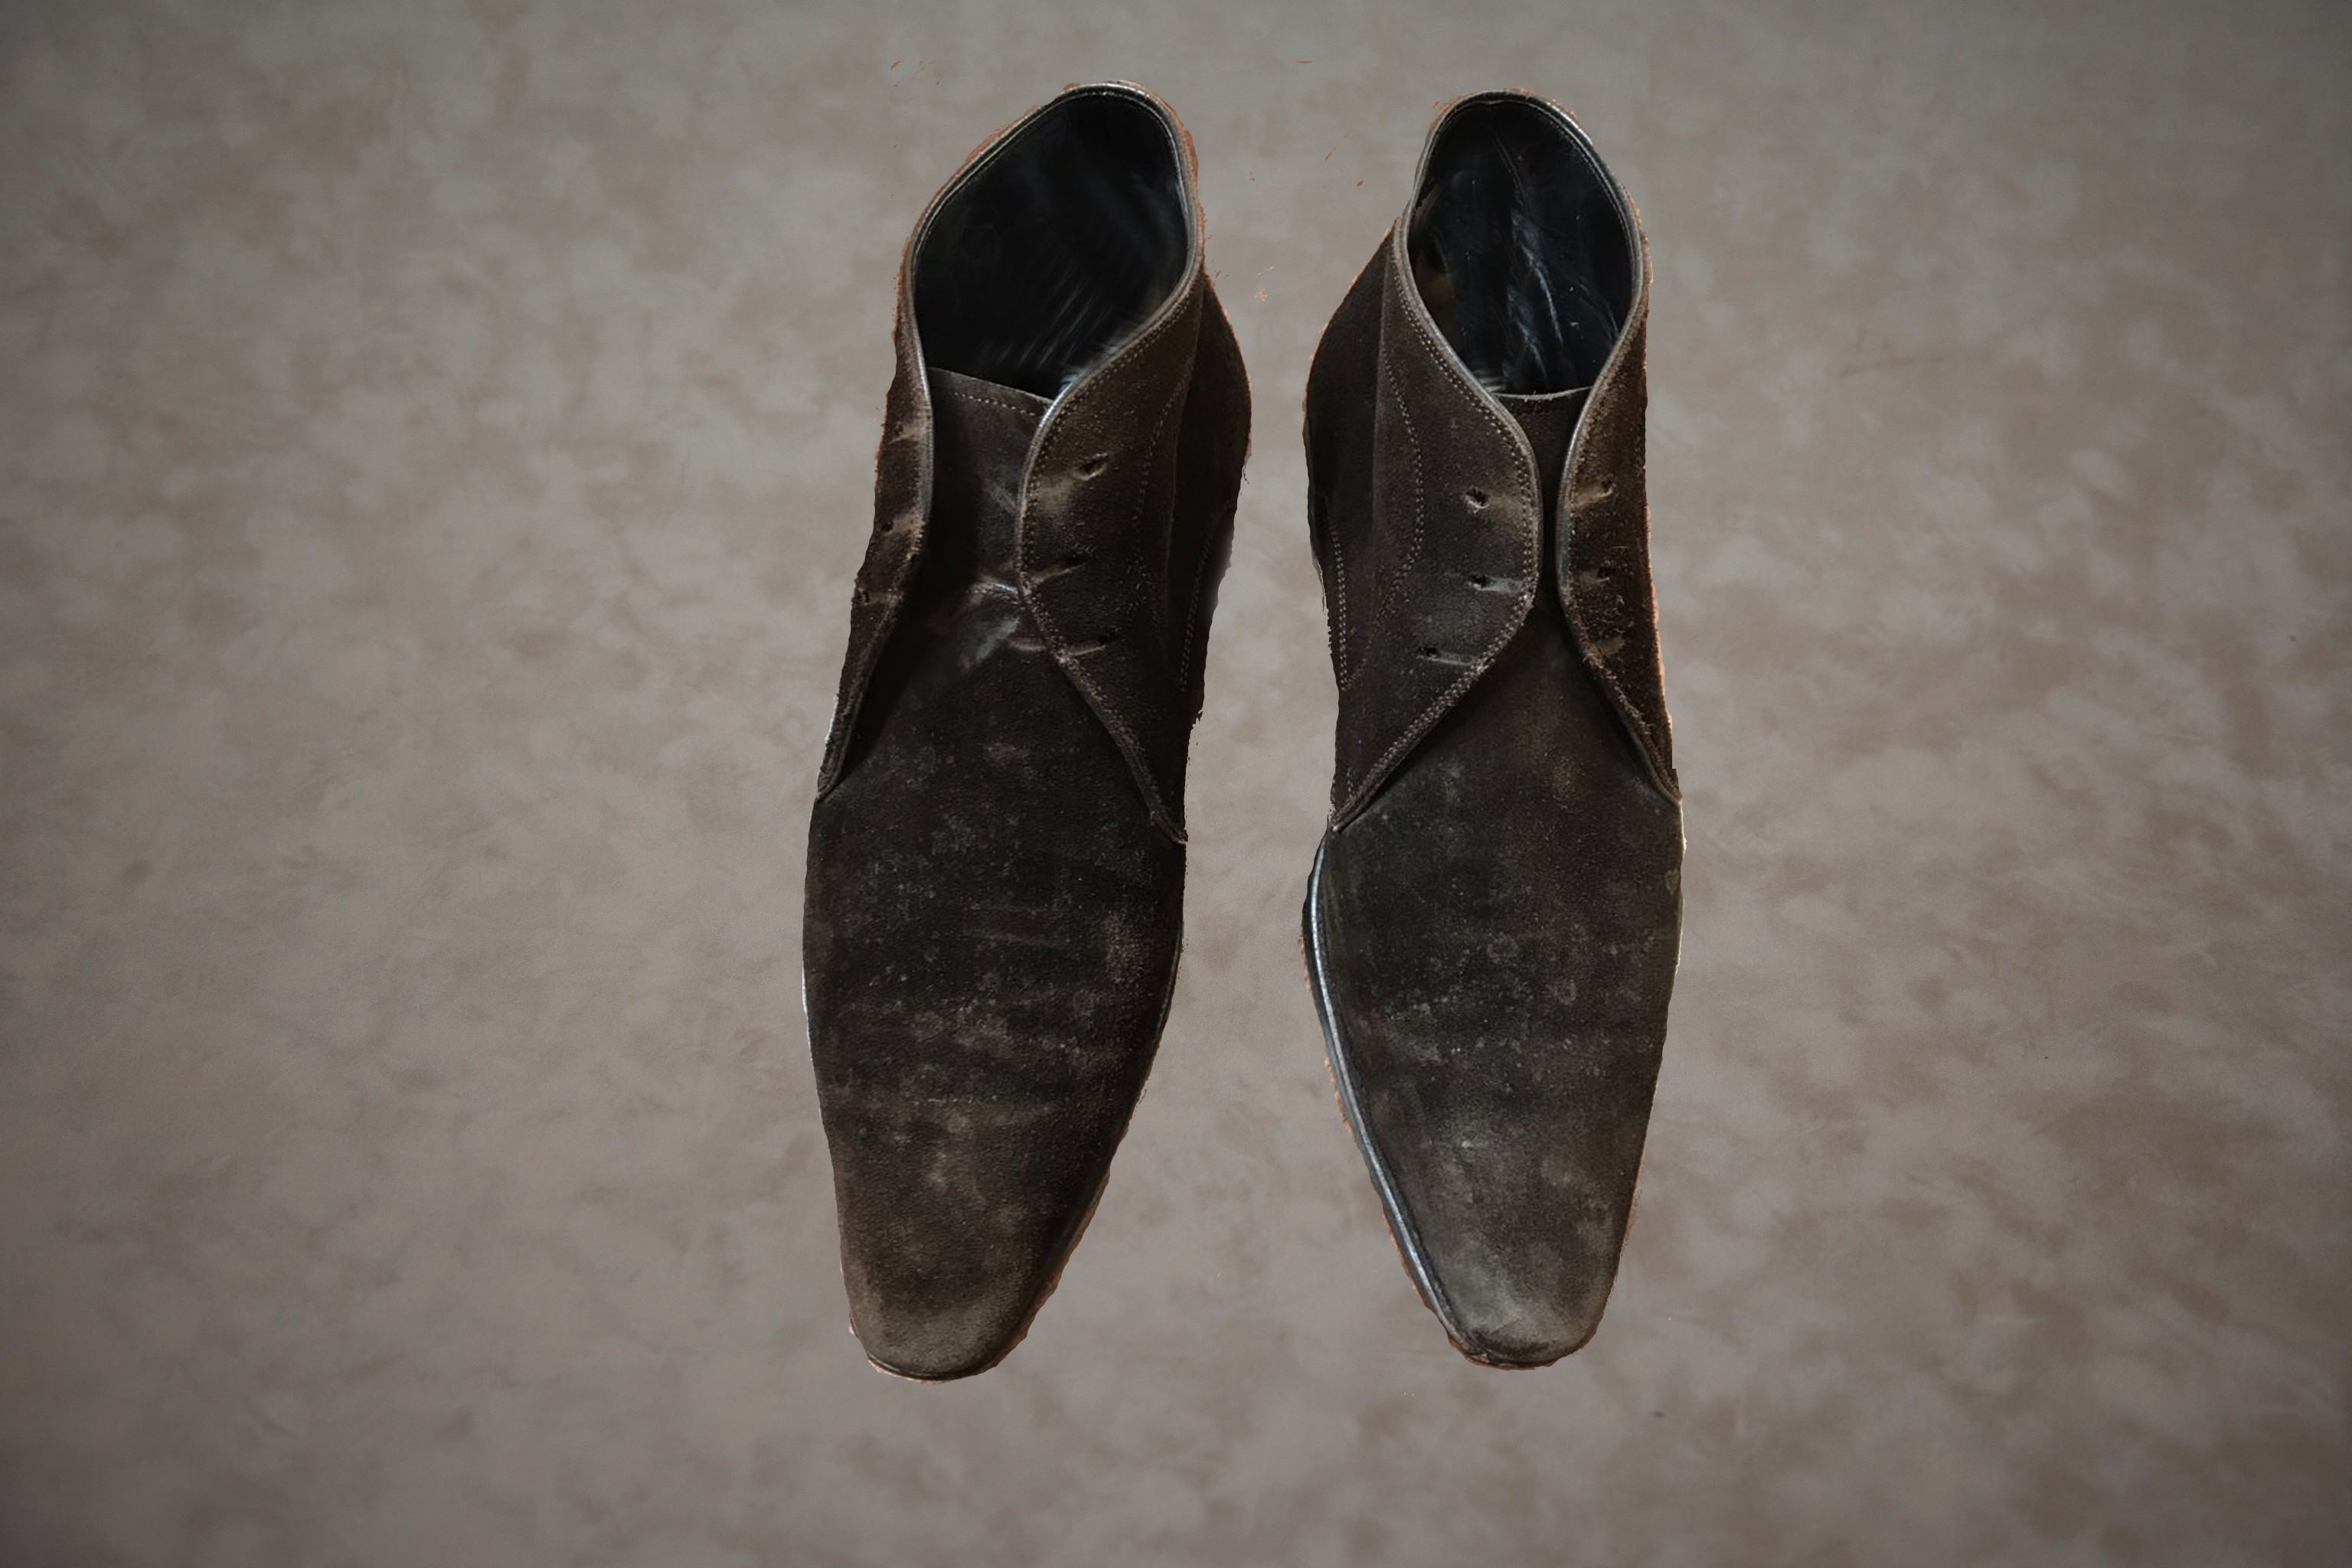 Suede schoenen reinigen met stoom voor behandeling